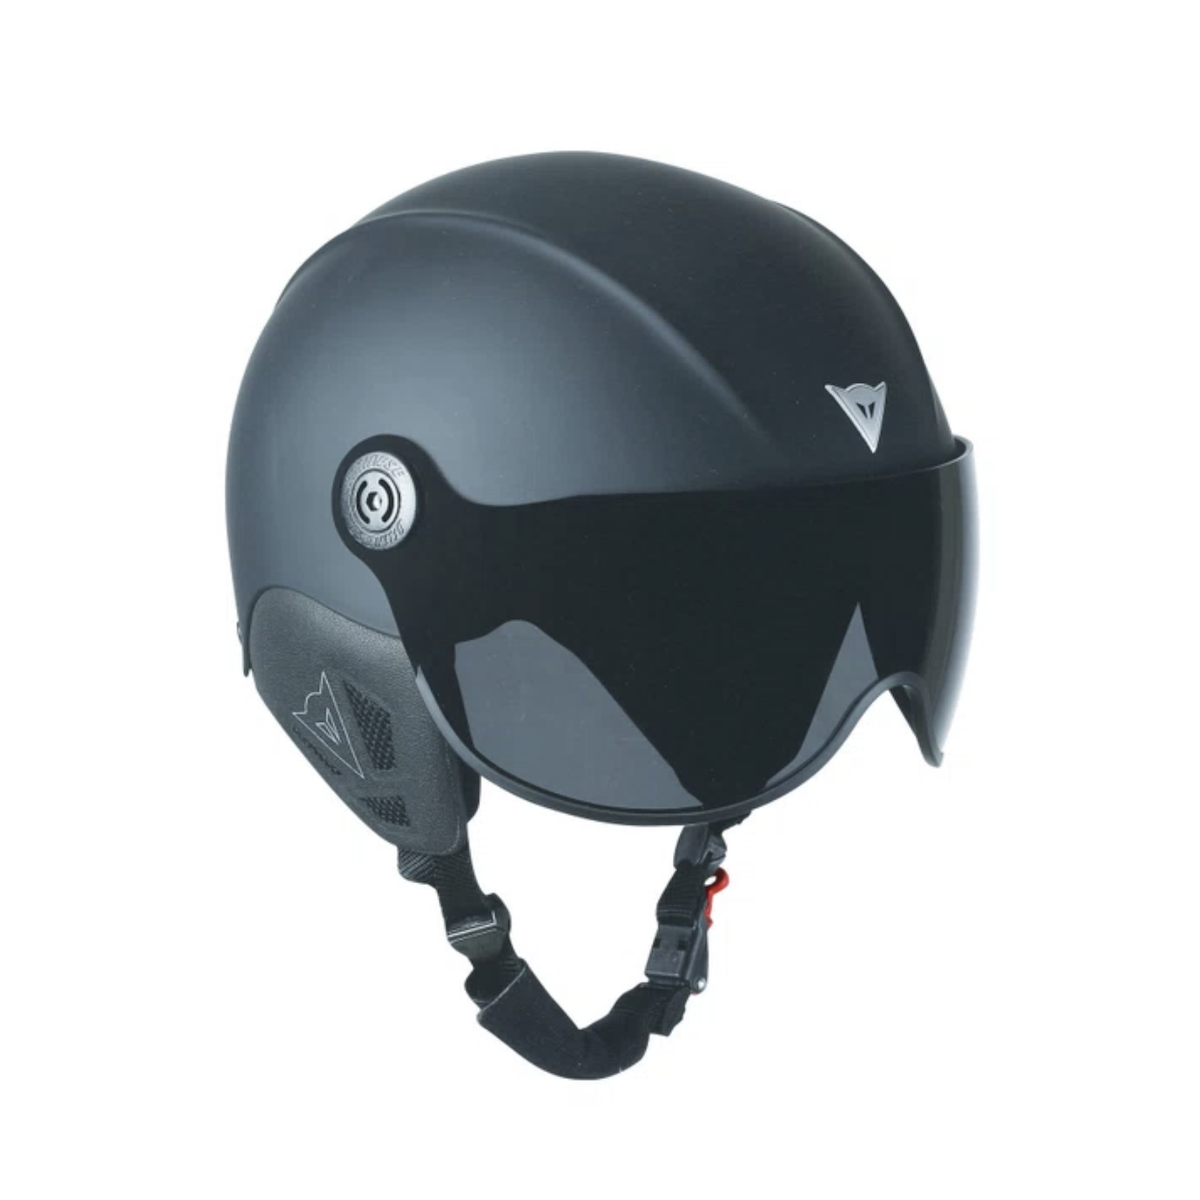 DAINESE V-VISION snow helmet - black